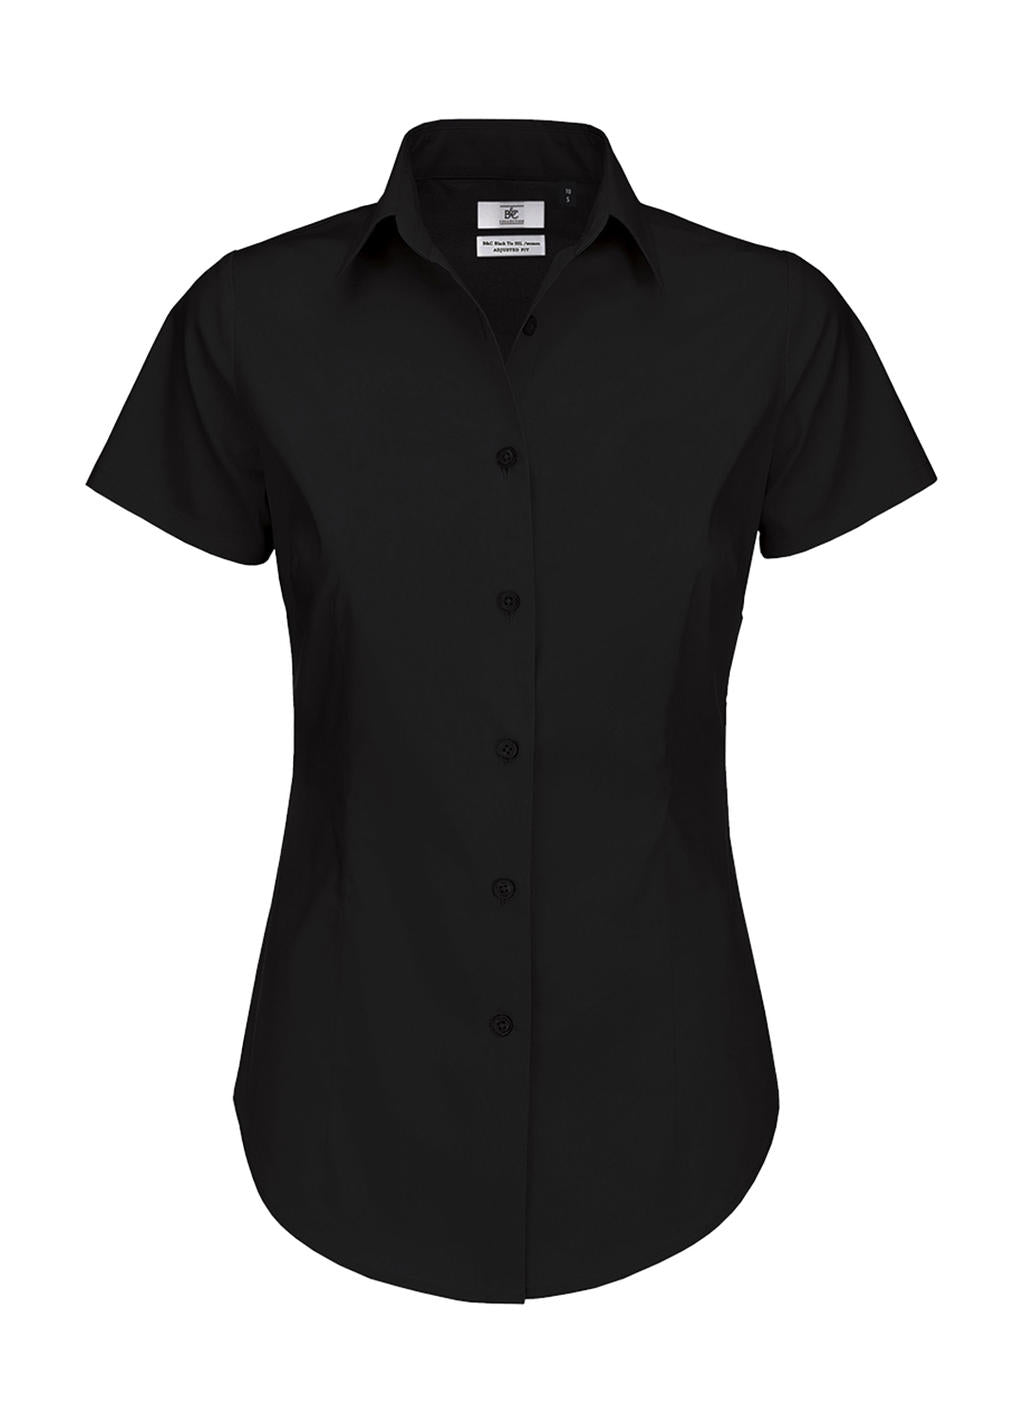 B&C Damen Business Bluse Oberteil T-Shirt Longsleeve Shirt kurzarm